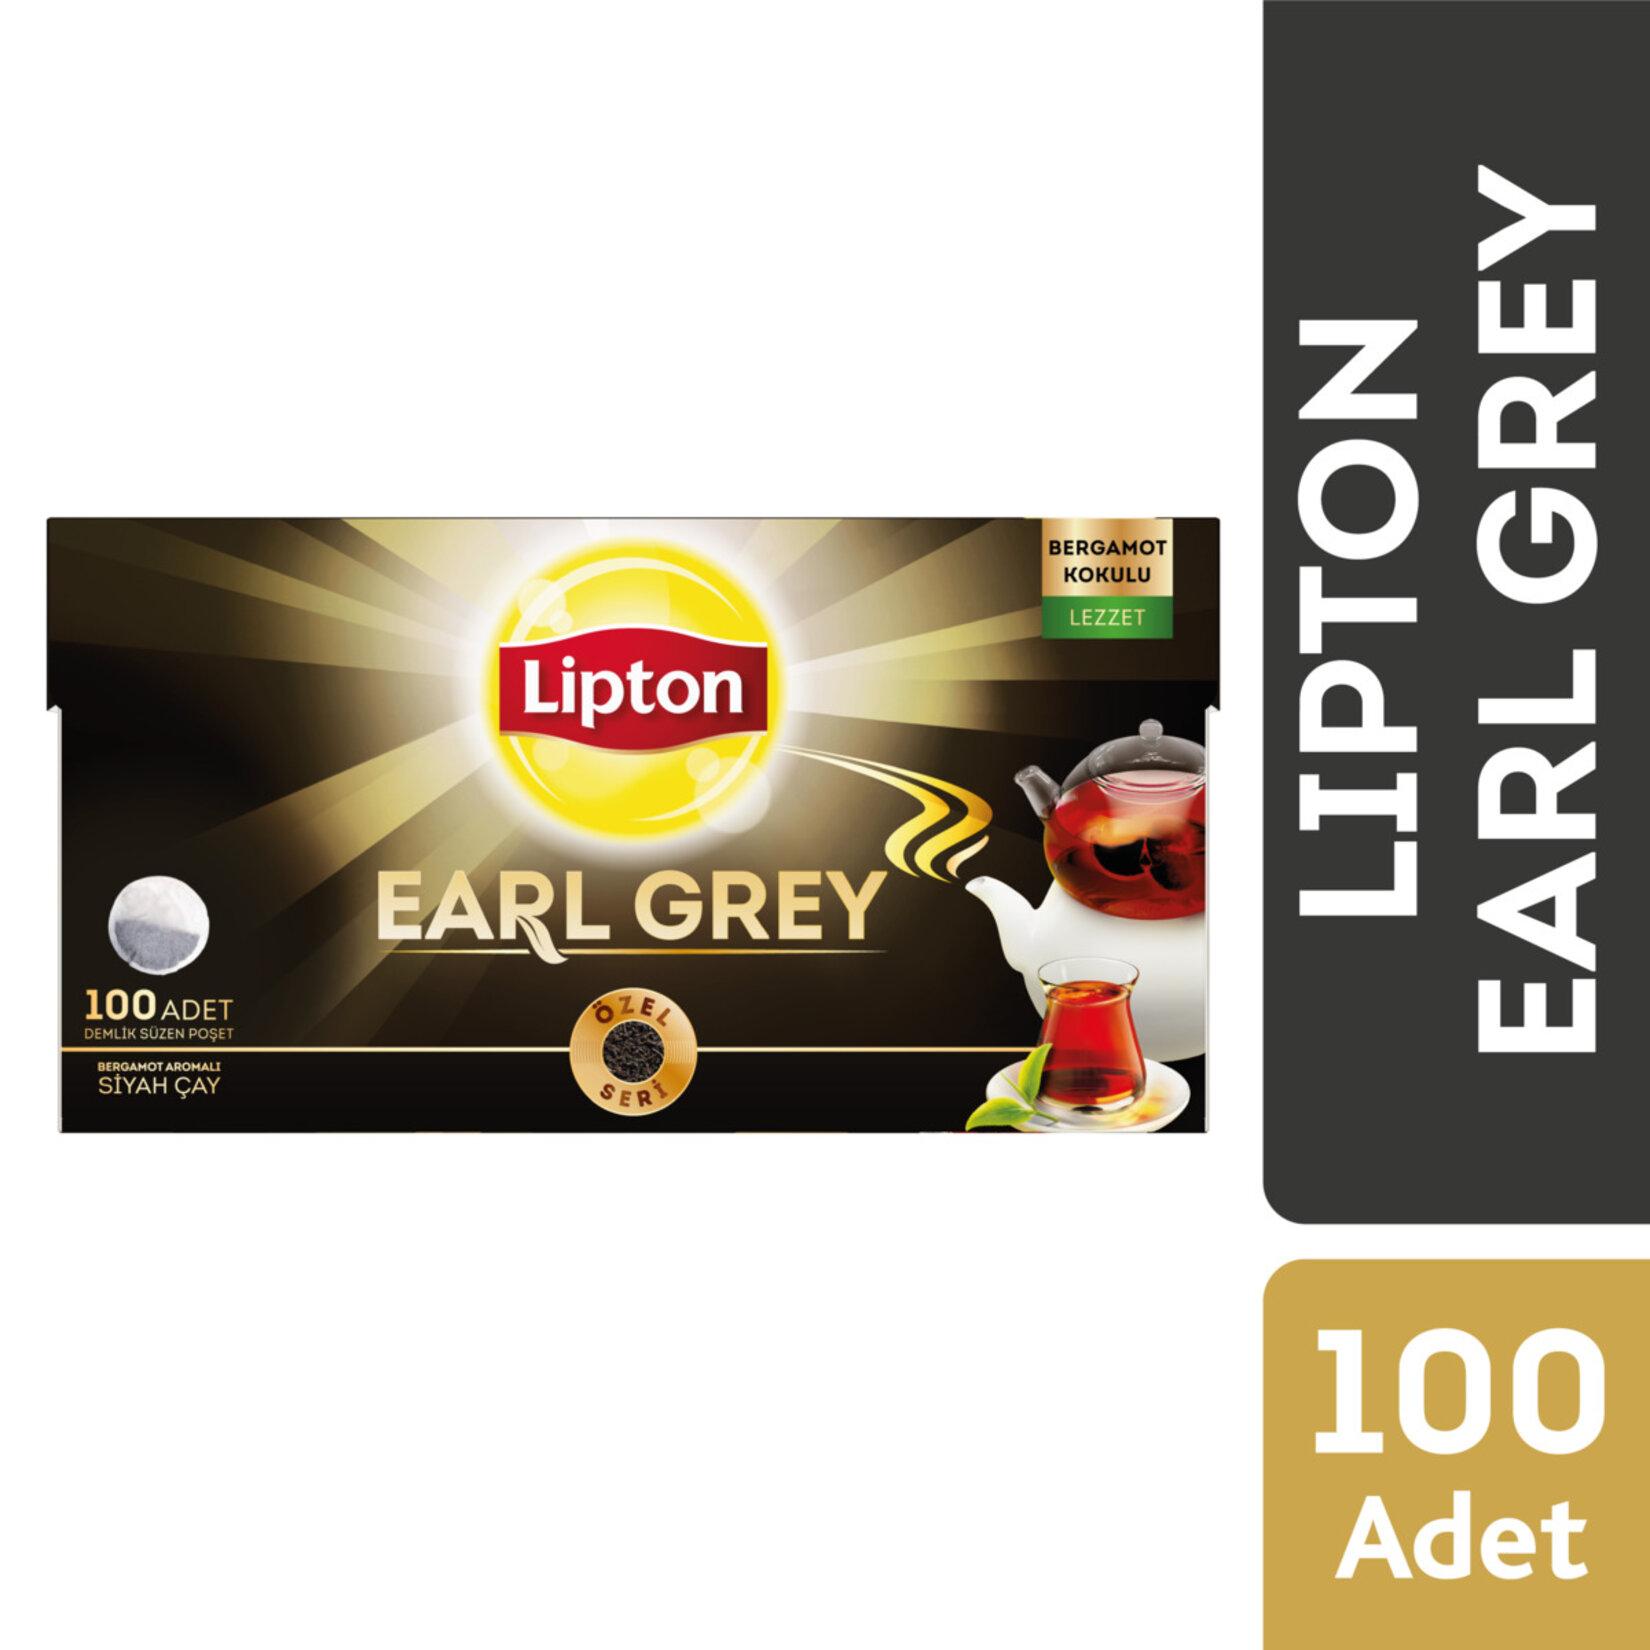 Lipton Earl Grey Bergamot Aromalı Demlik Poşet Çay 100'lü 6 Paket